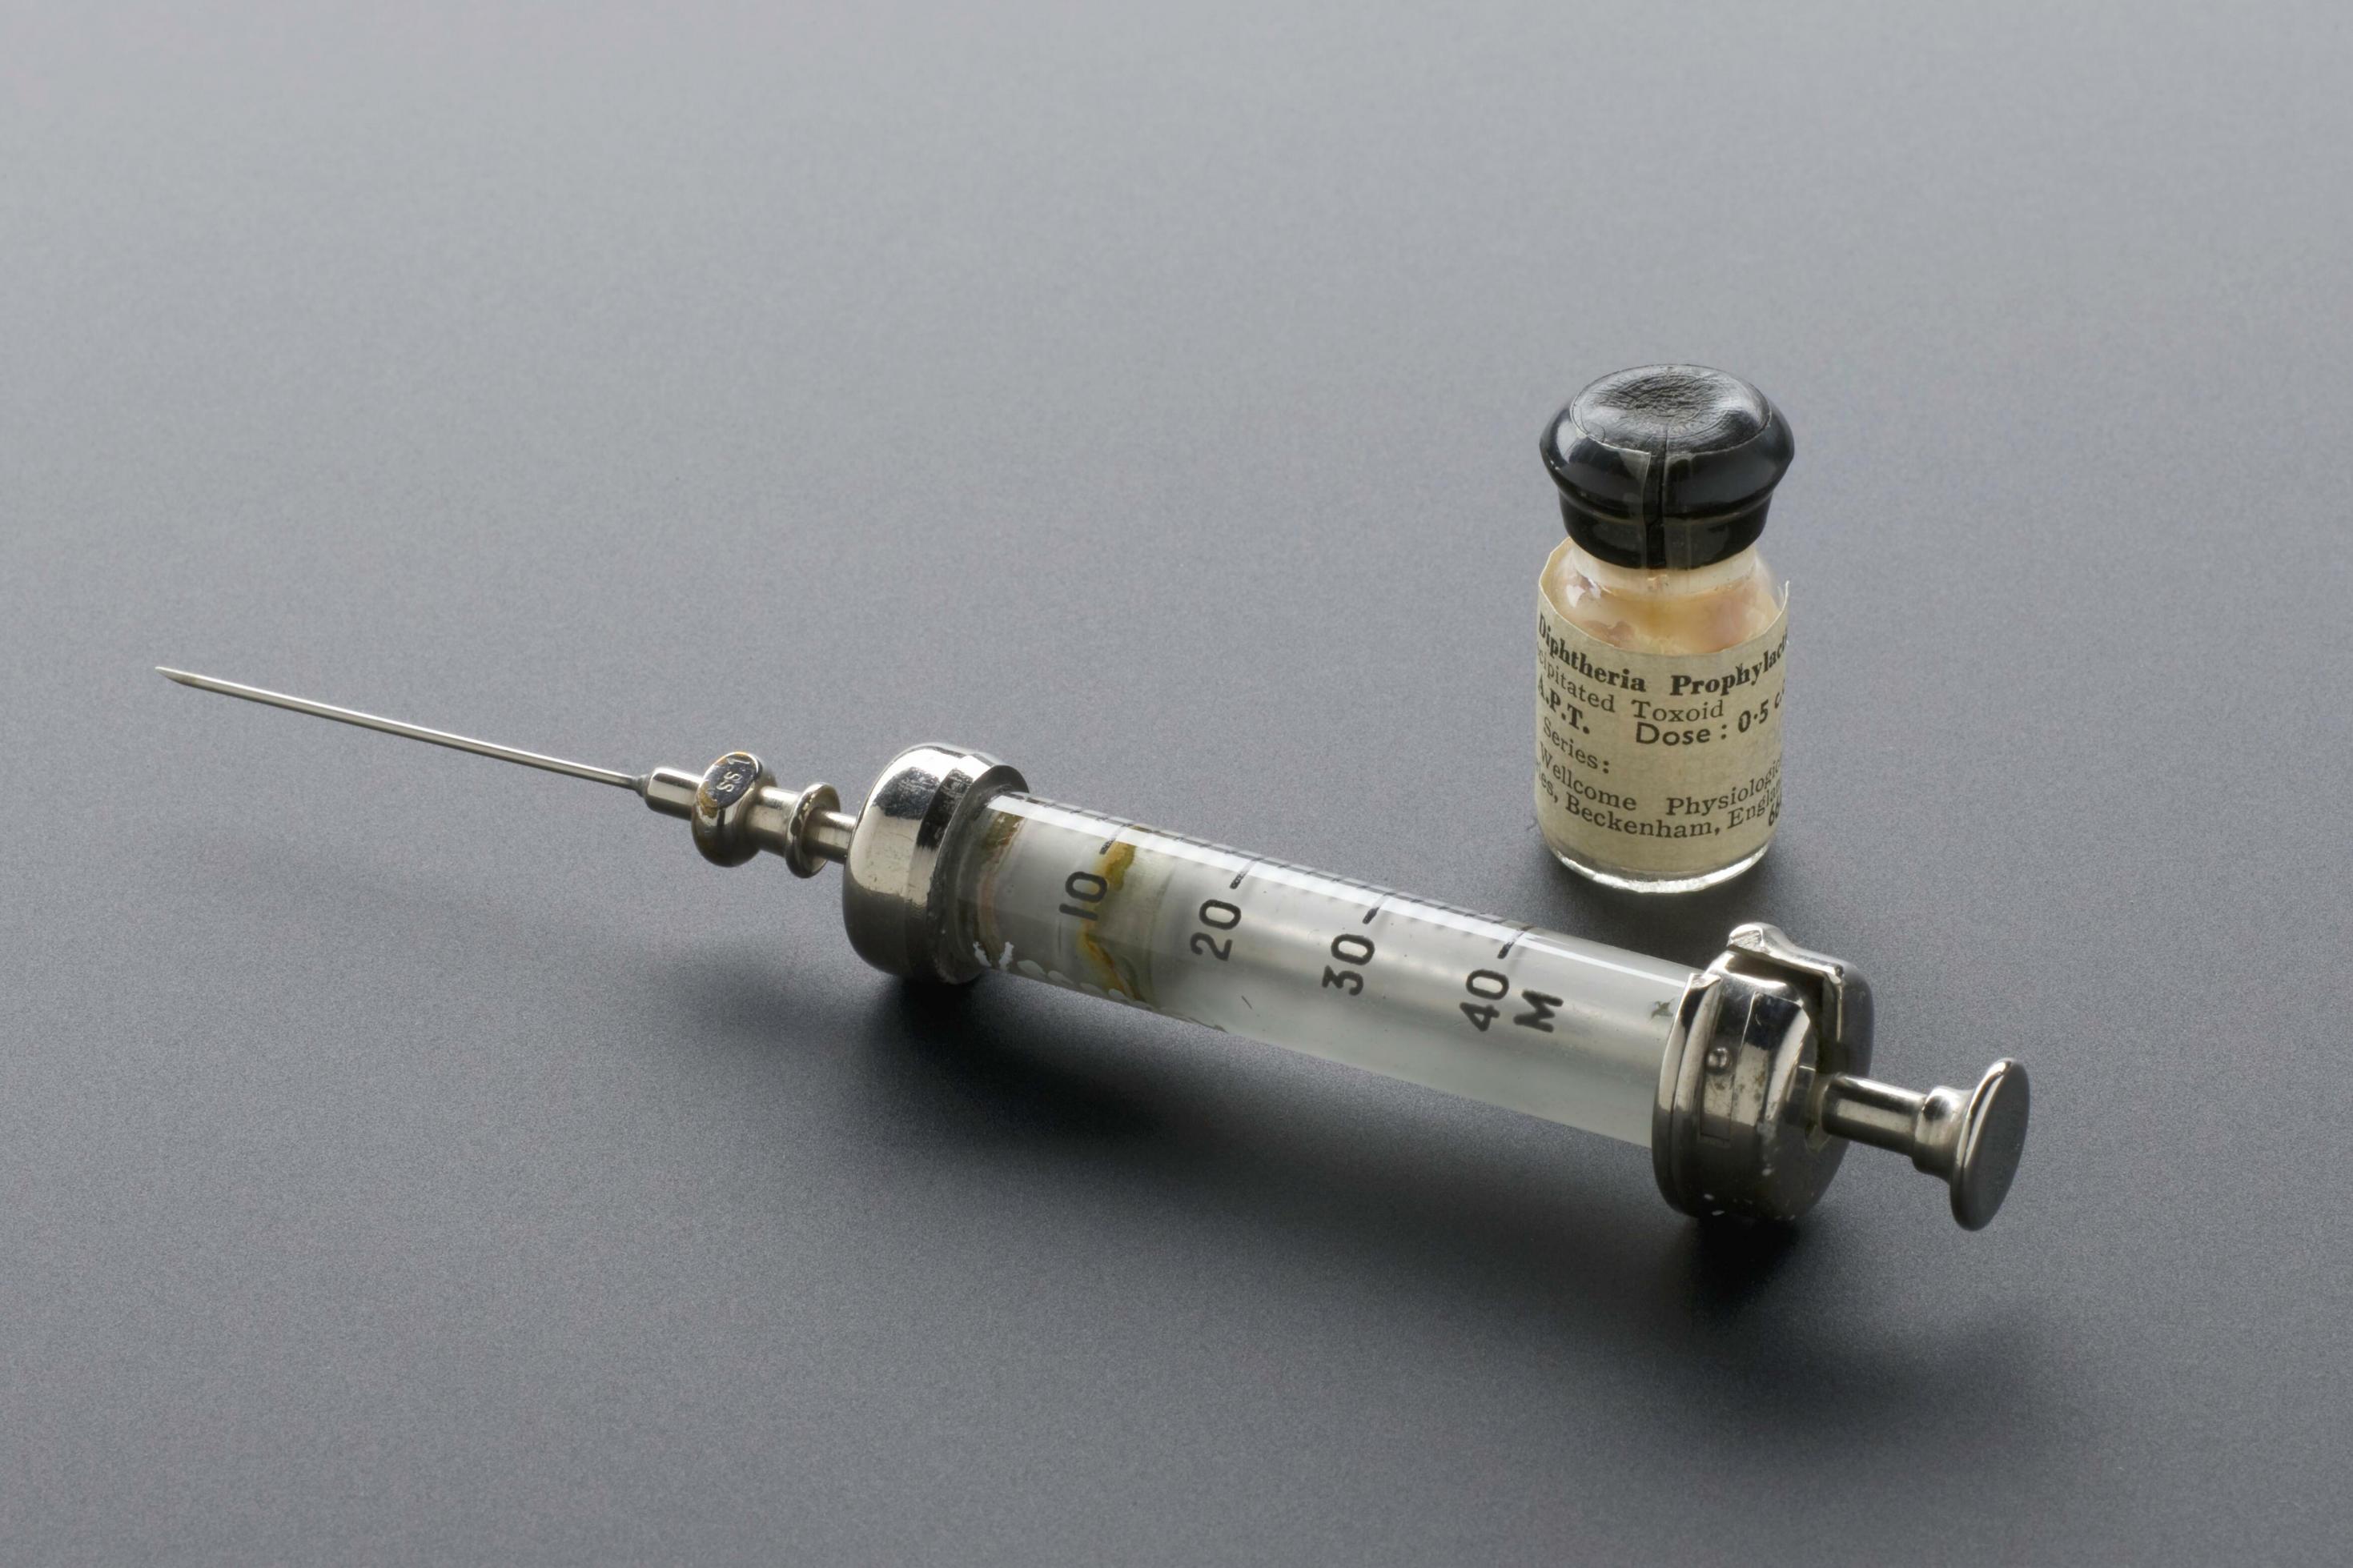 Auf dem Bild ist eine historische Impfspritze und ein kleines Fläschchen mit Diphtherie-Impfstoff zu sehen.